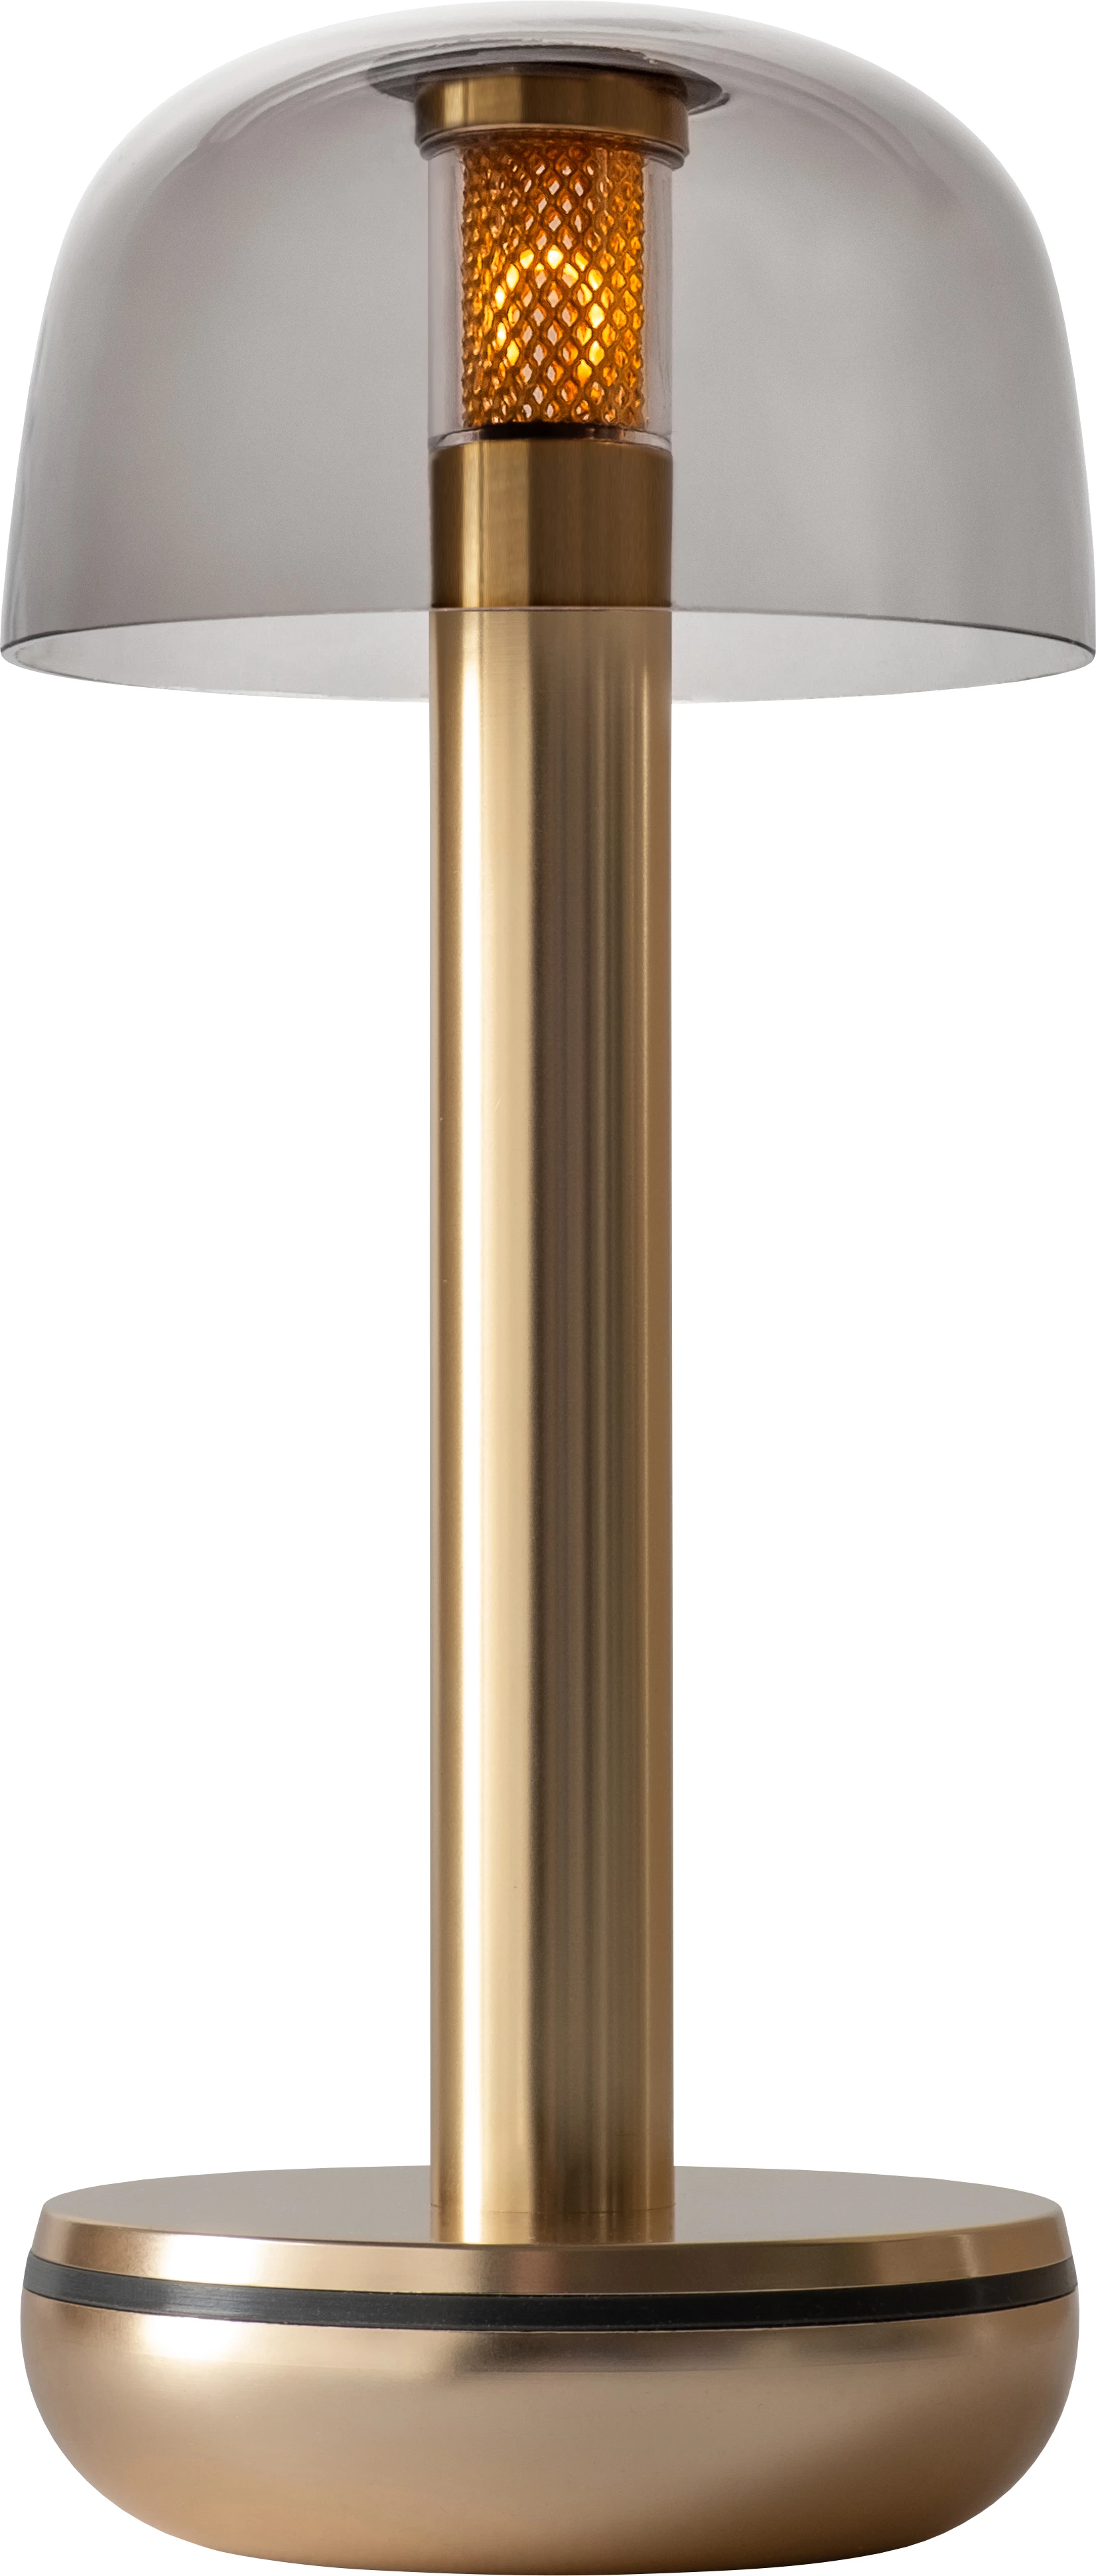 Humble Two lampe, guld/røgfarvet, H21,2 cm